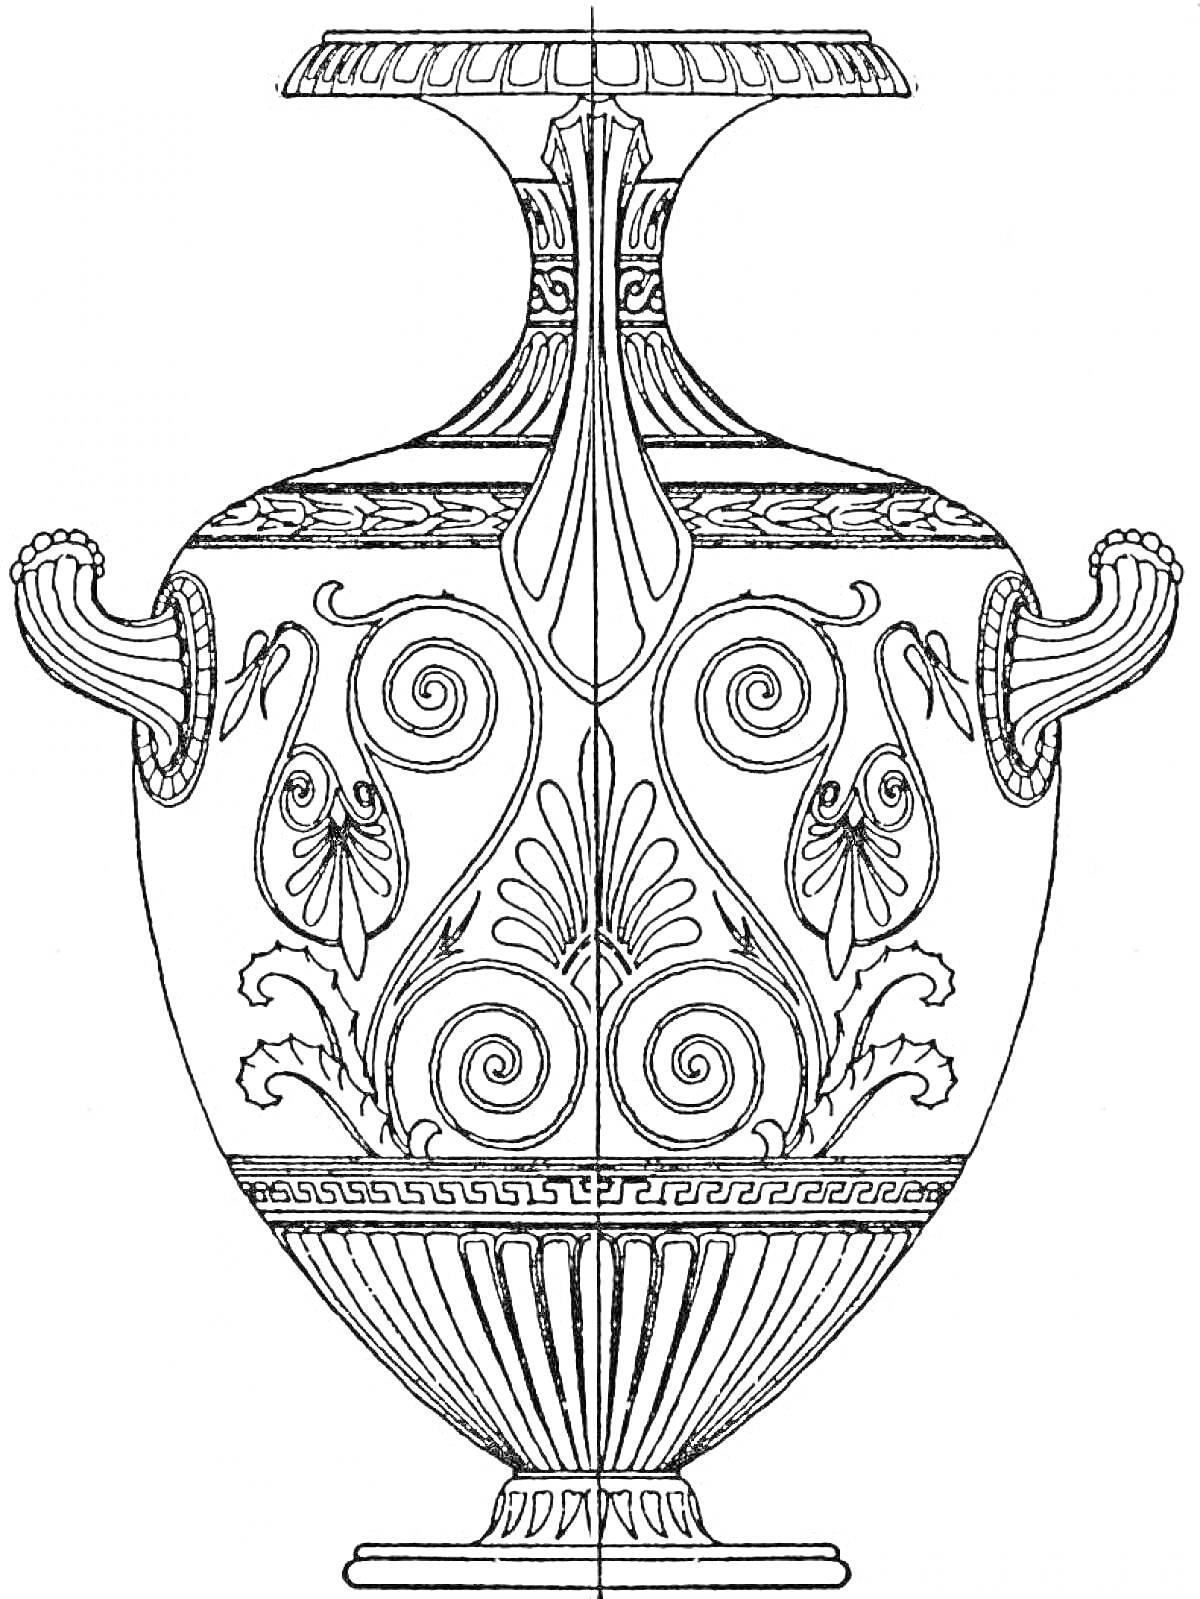 Раскраска Греческая ваза с декоративными ручками, узорами в виде завитков, листьев и греческого орнамента